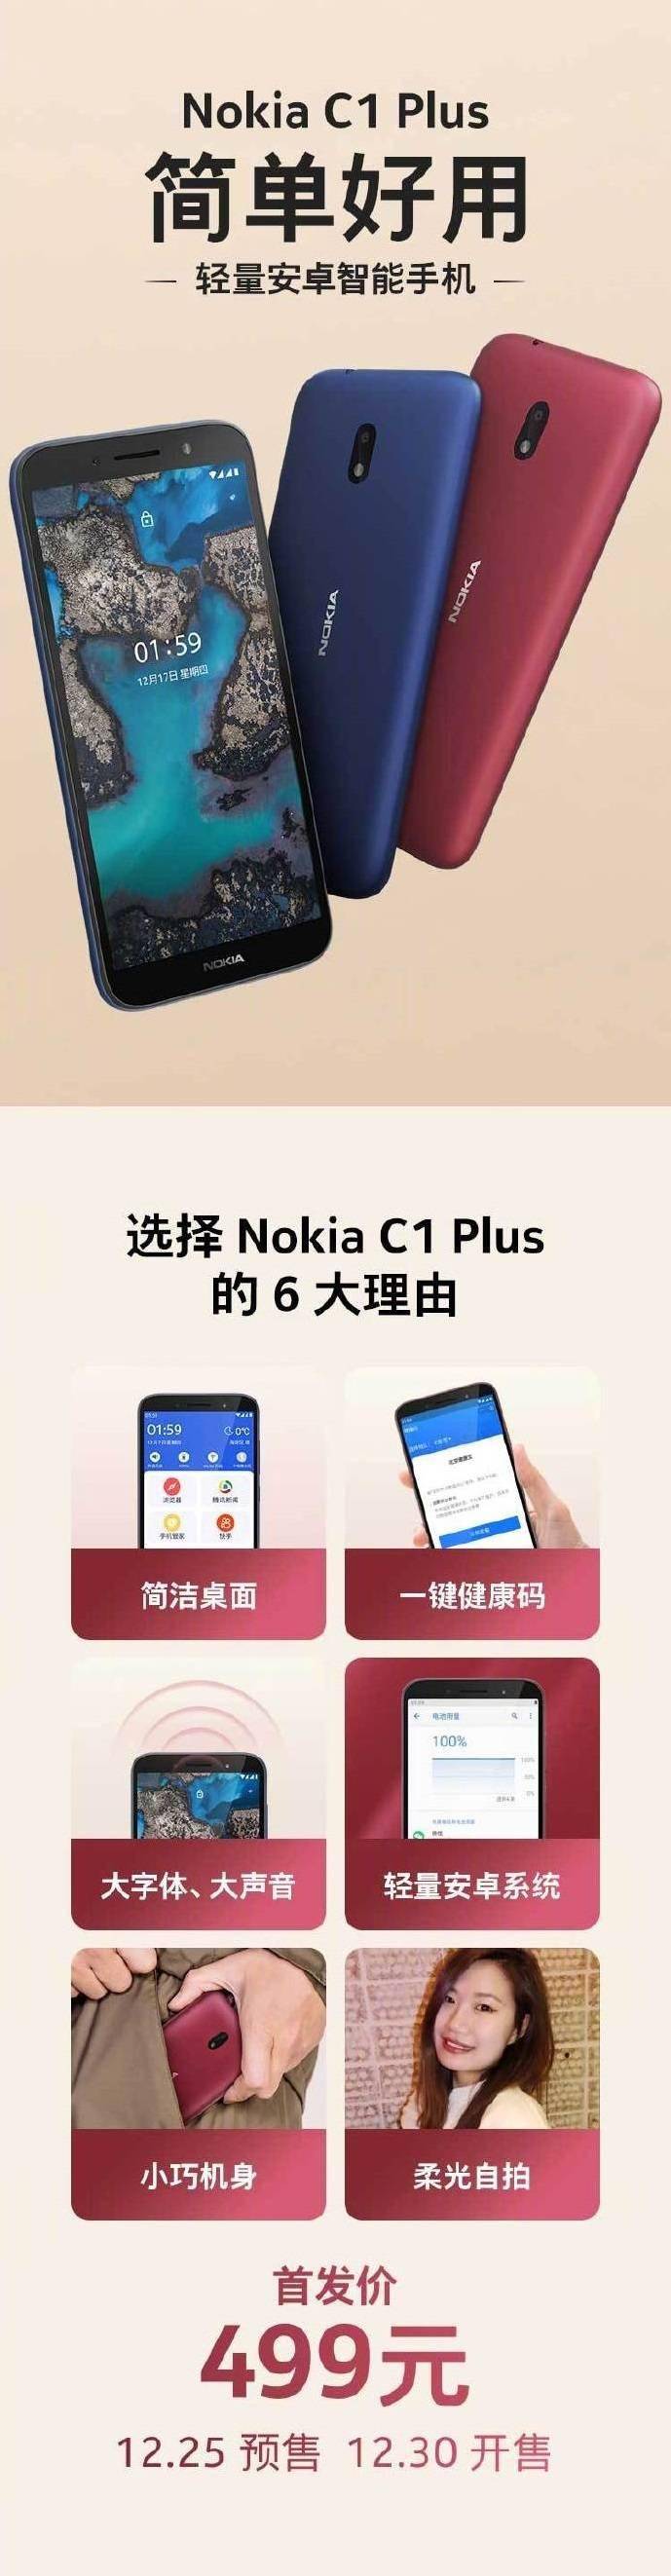 諾基亞C1 Plus國行售價 499 元，12 月 30 日開售